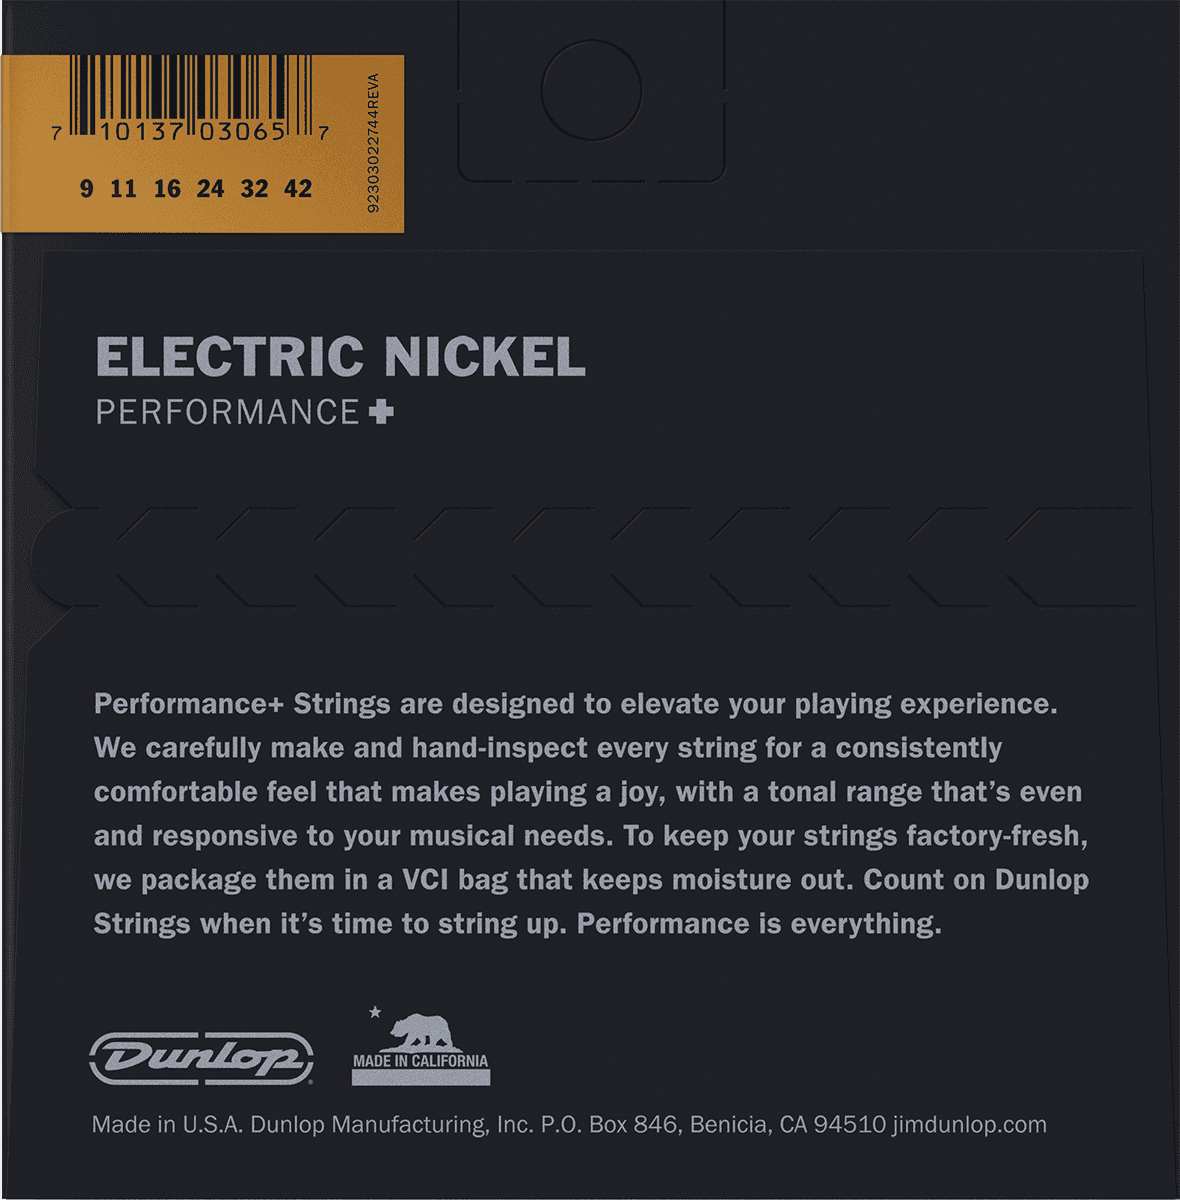 DEN 09-42 Electric Guitar Strings, Nickel